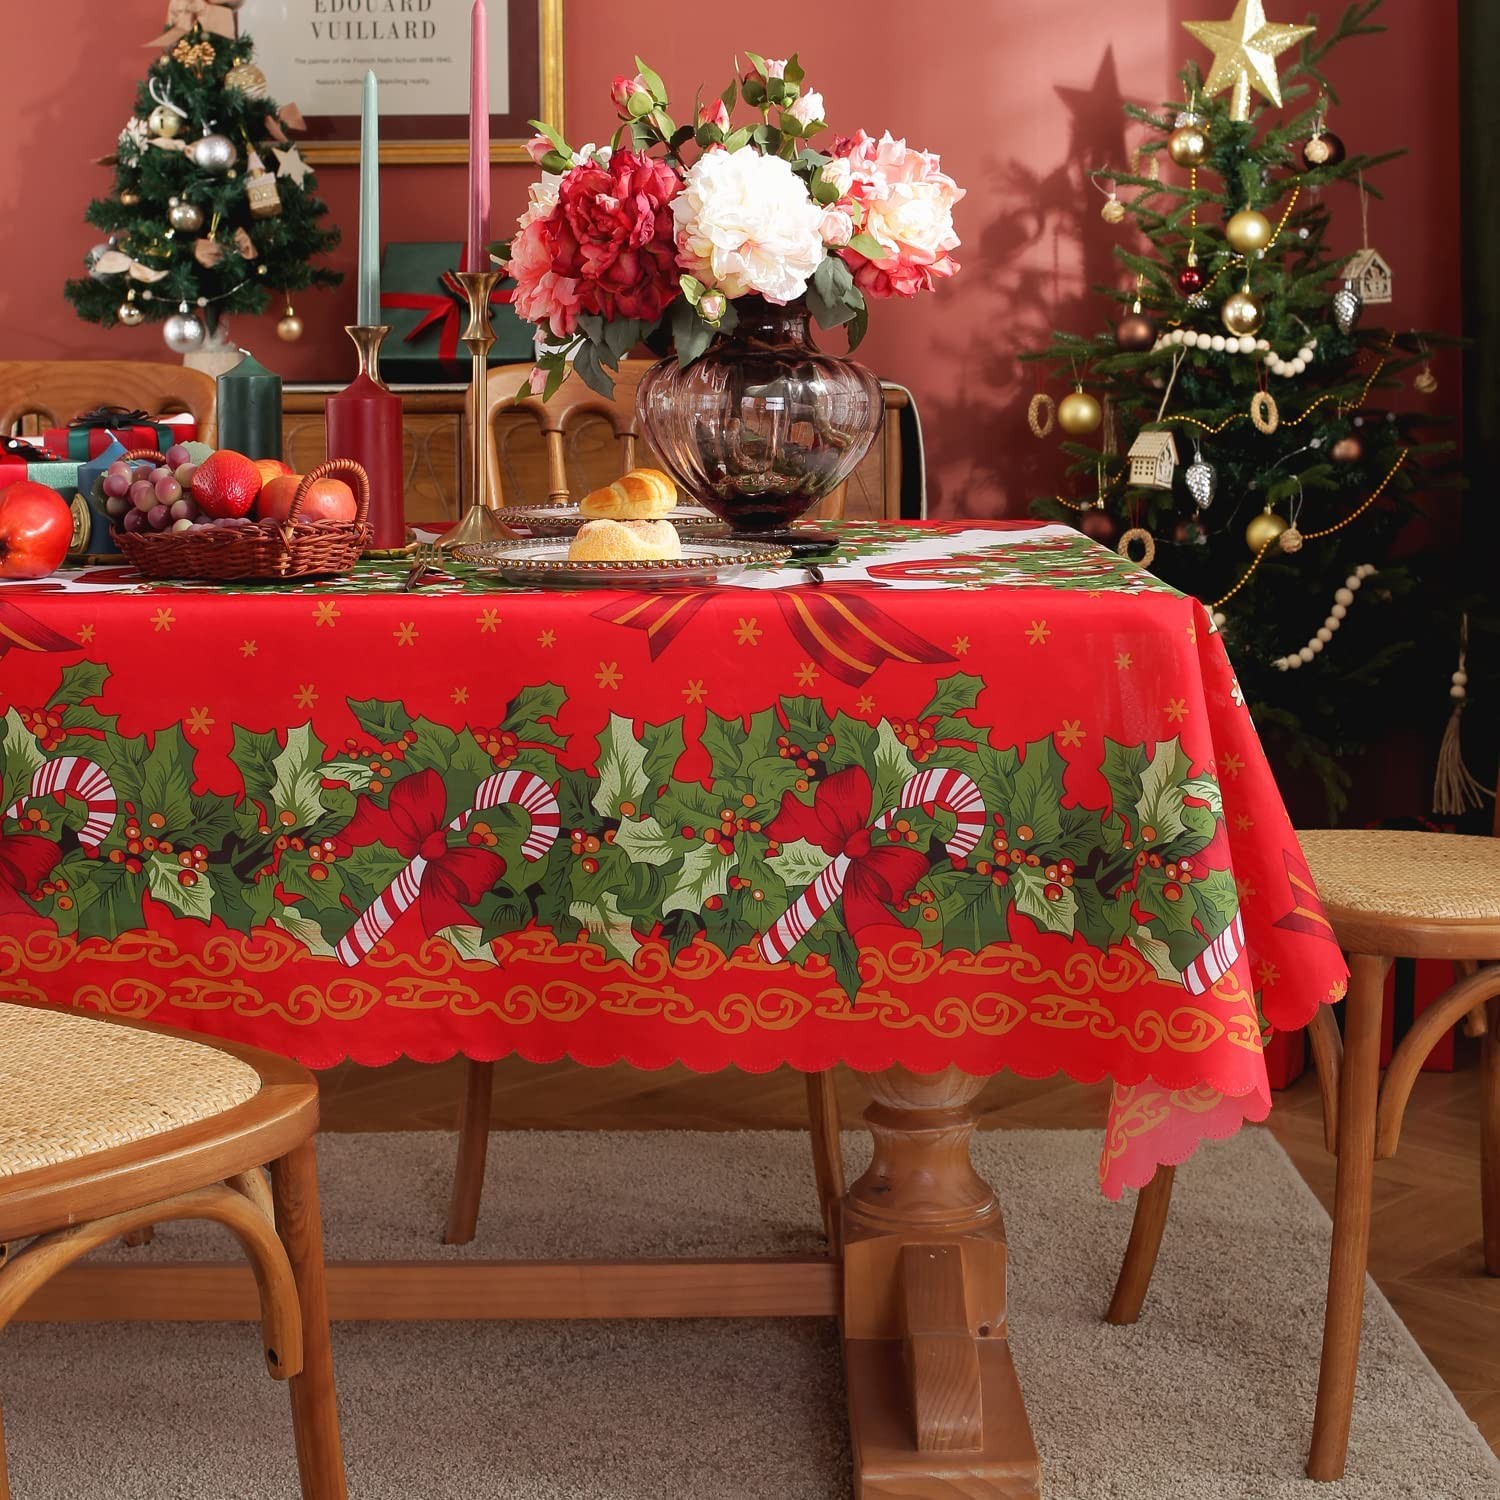 クリスマス テーブルクロス 撥水 テーブルカバー 長方形 防水 防油 撥水加工 汚れ防止 クリスマス 飾り 150x180cm 赤 クリスマスツリー